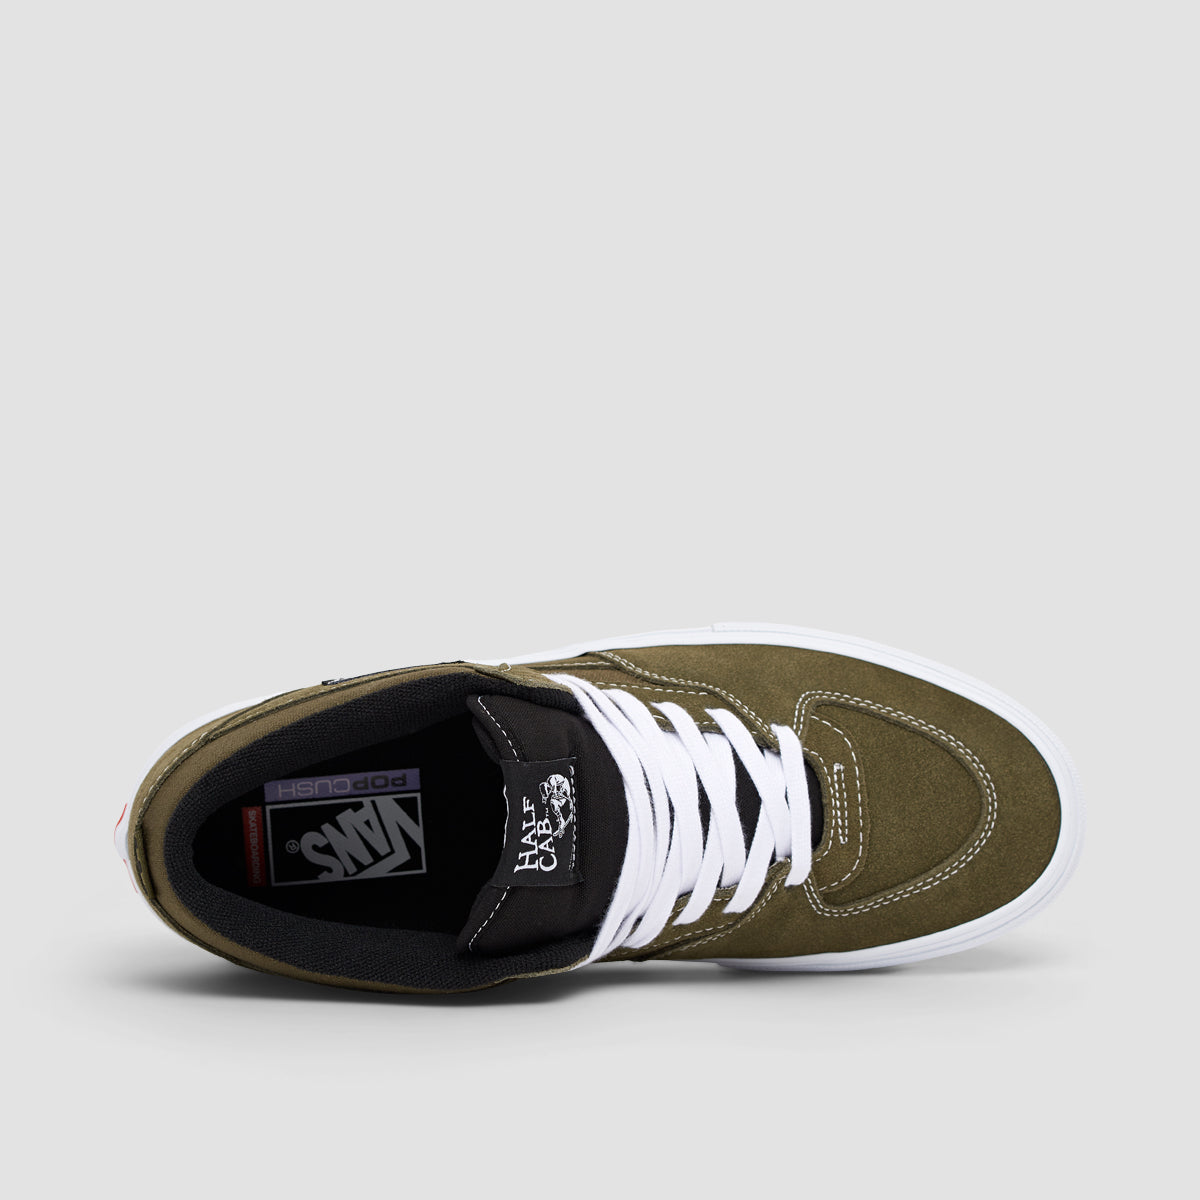 Vans Skate Half Cab Shoes - Dark Olive